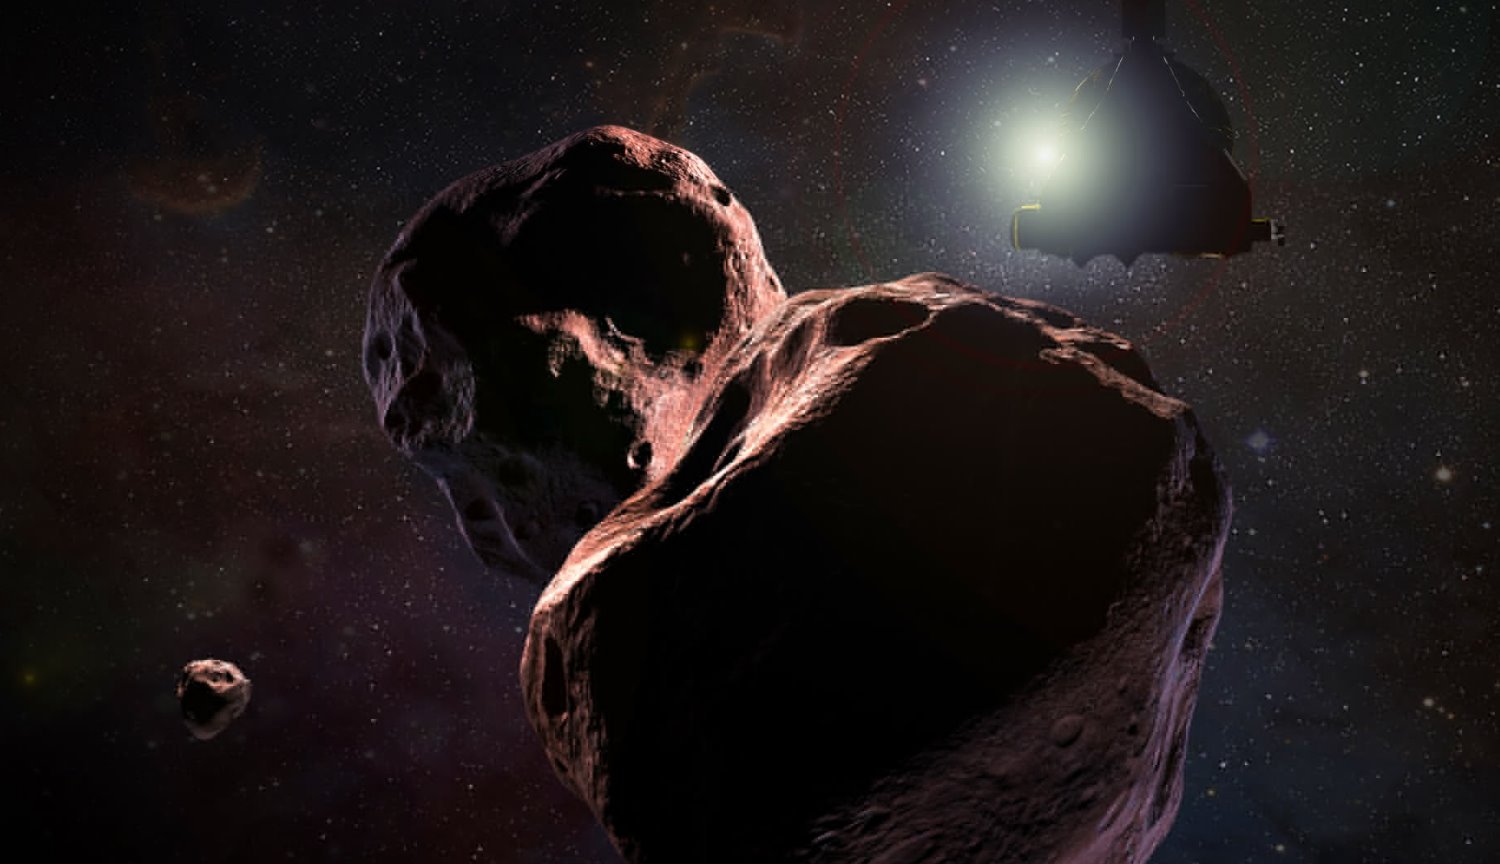 Et nyt mysterium for forskerne, hvorfor asteroide Ultima Thule har en tilspidset form?